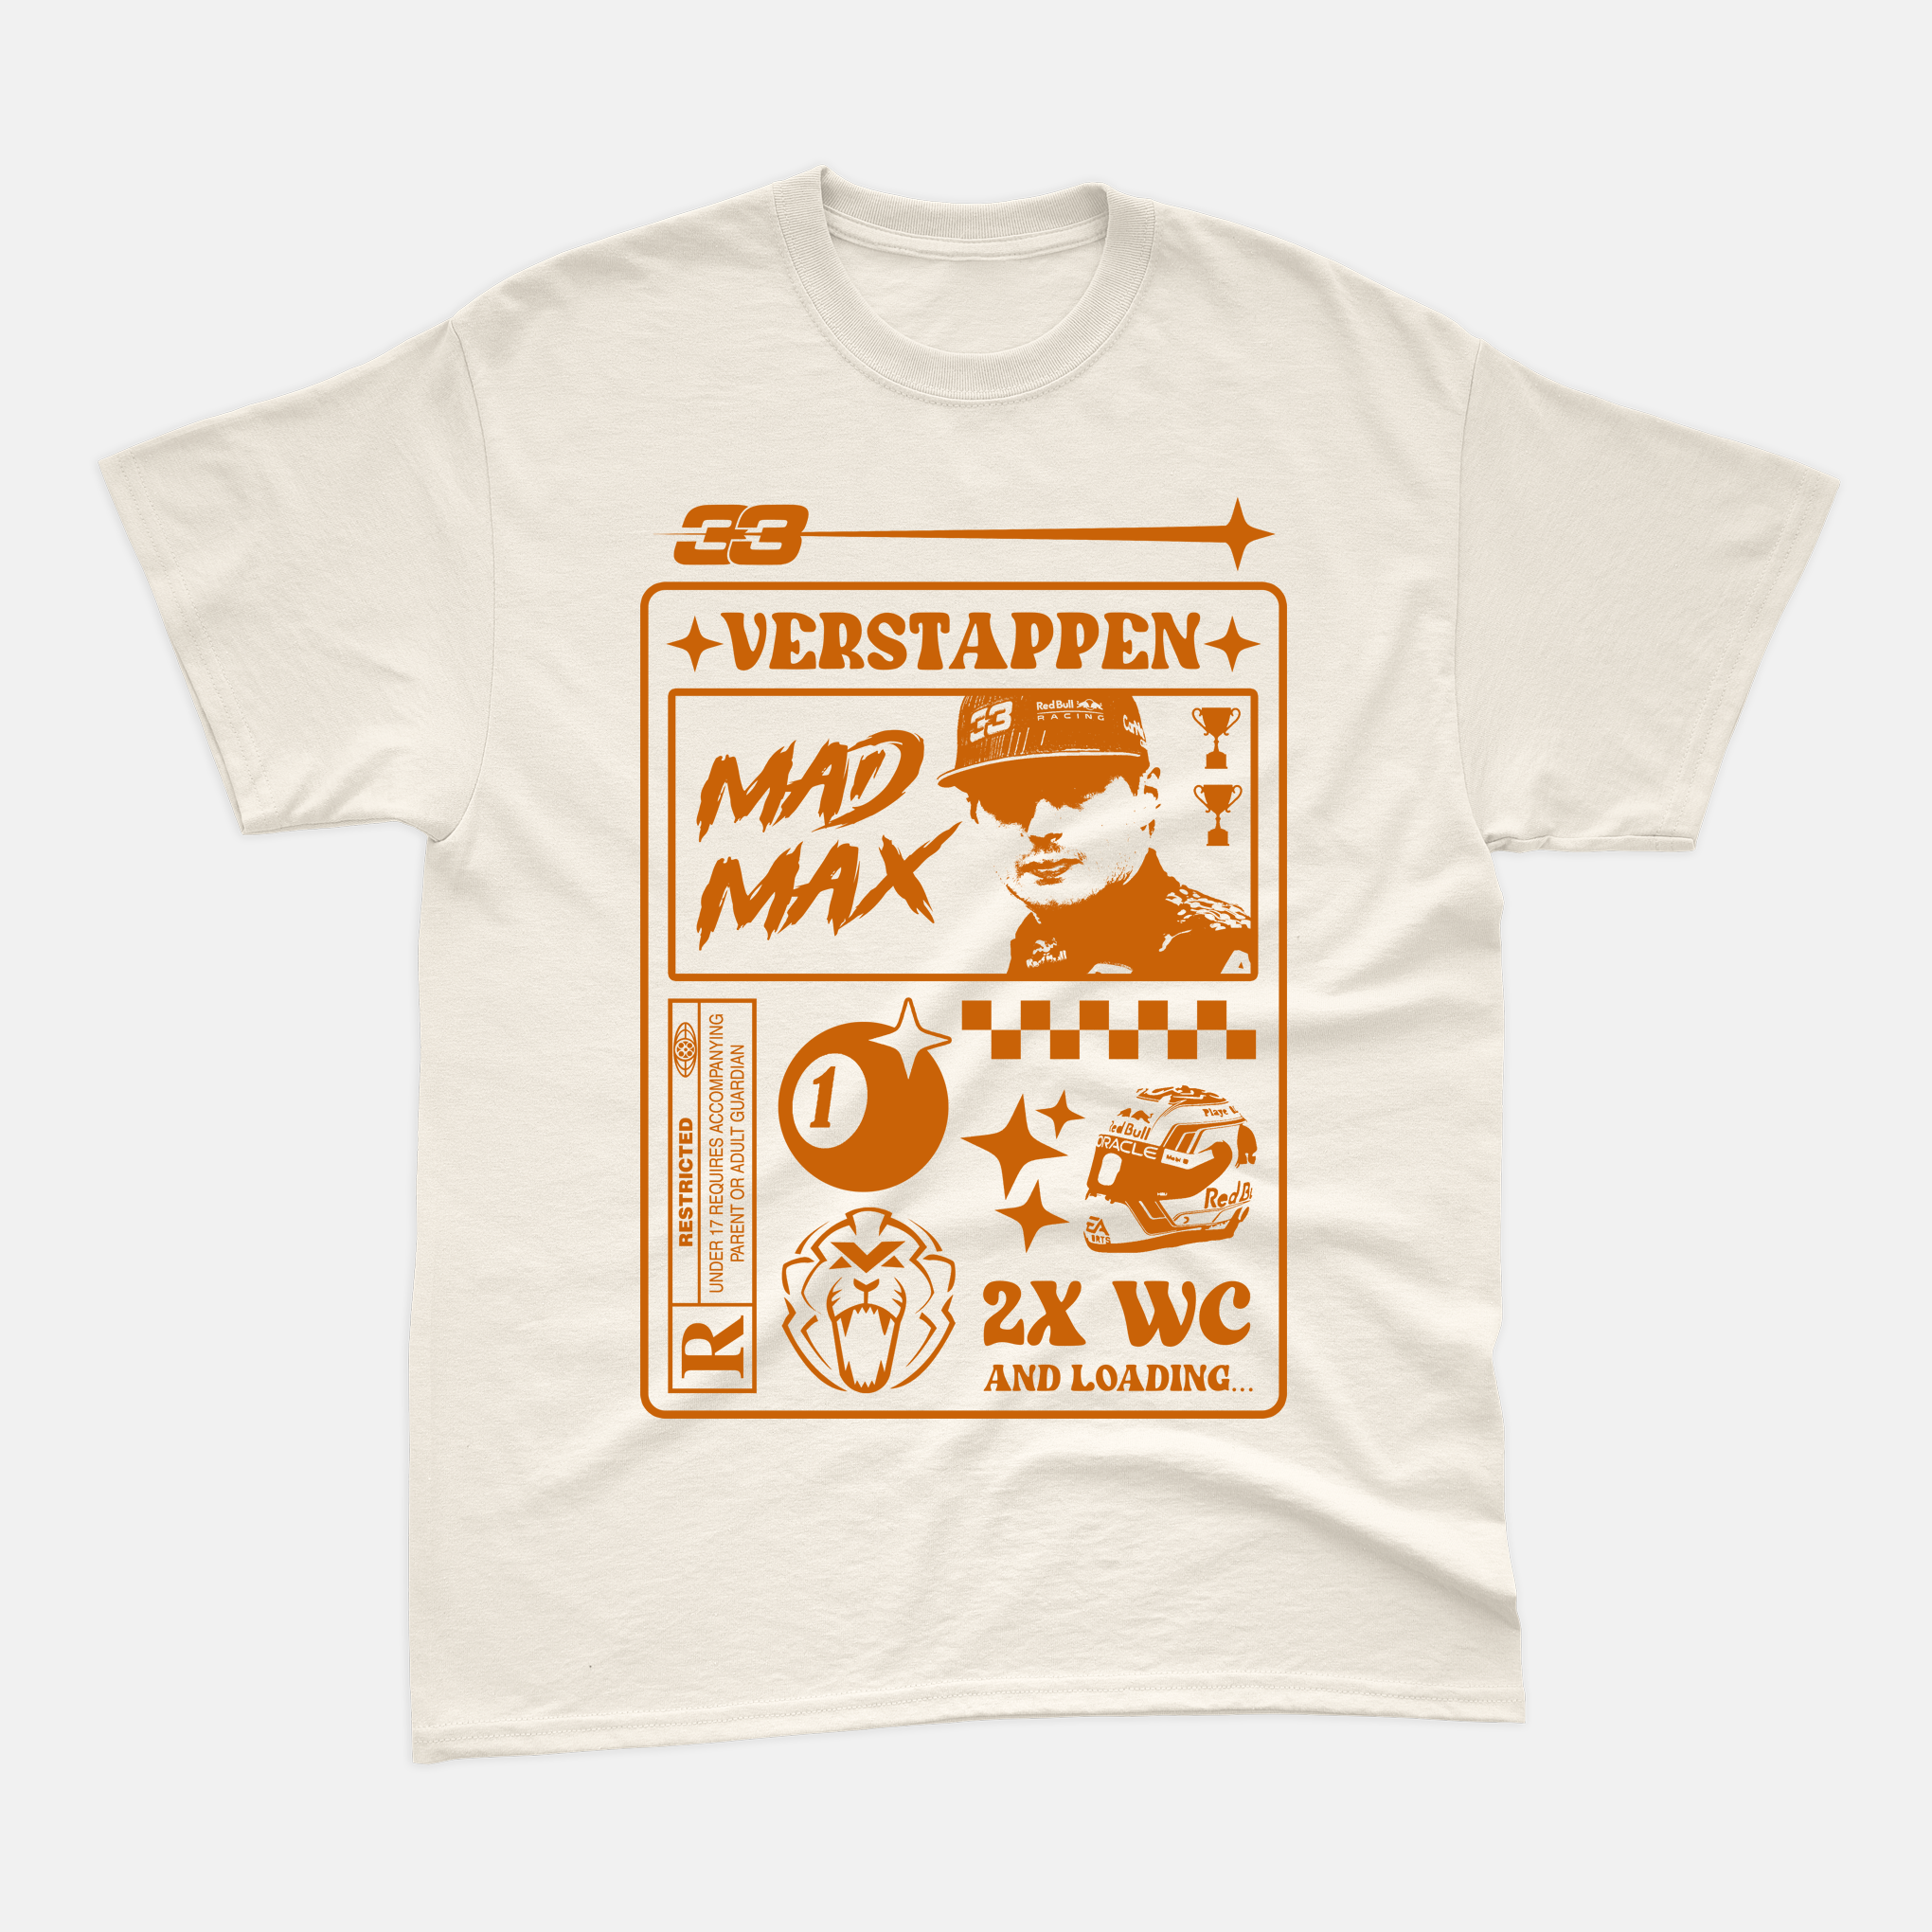 Camiseta RaioX Max Verstappen Mad Max Off White